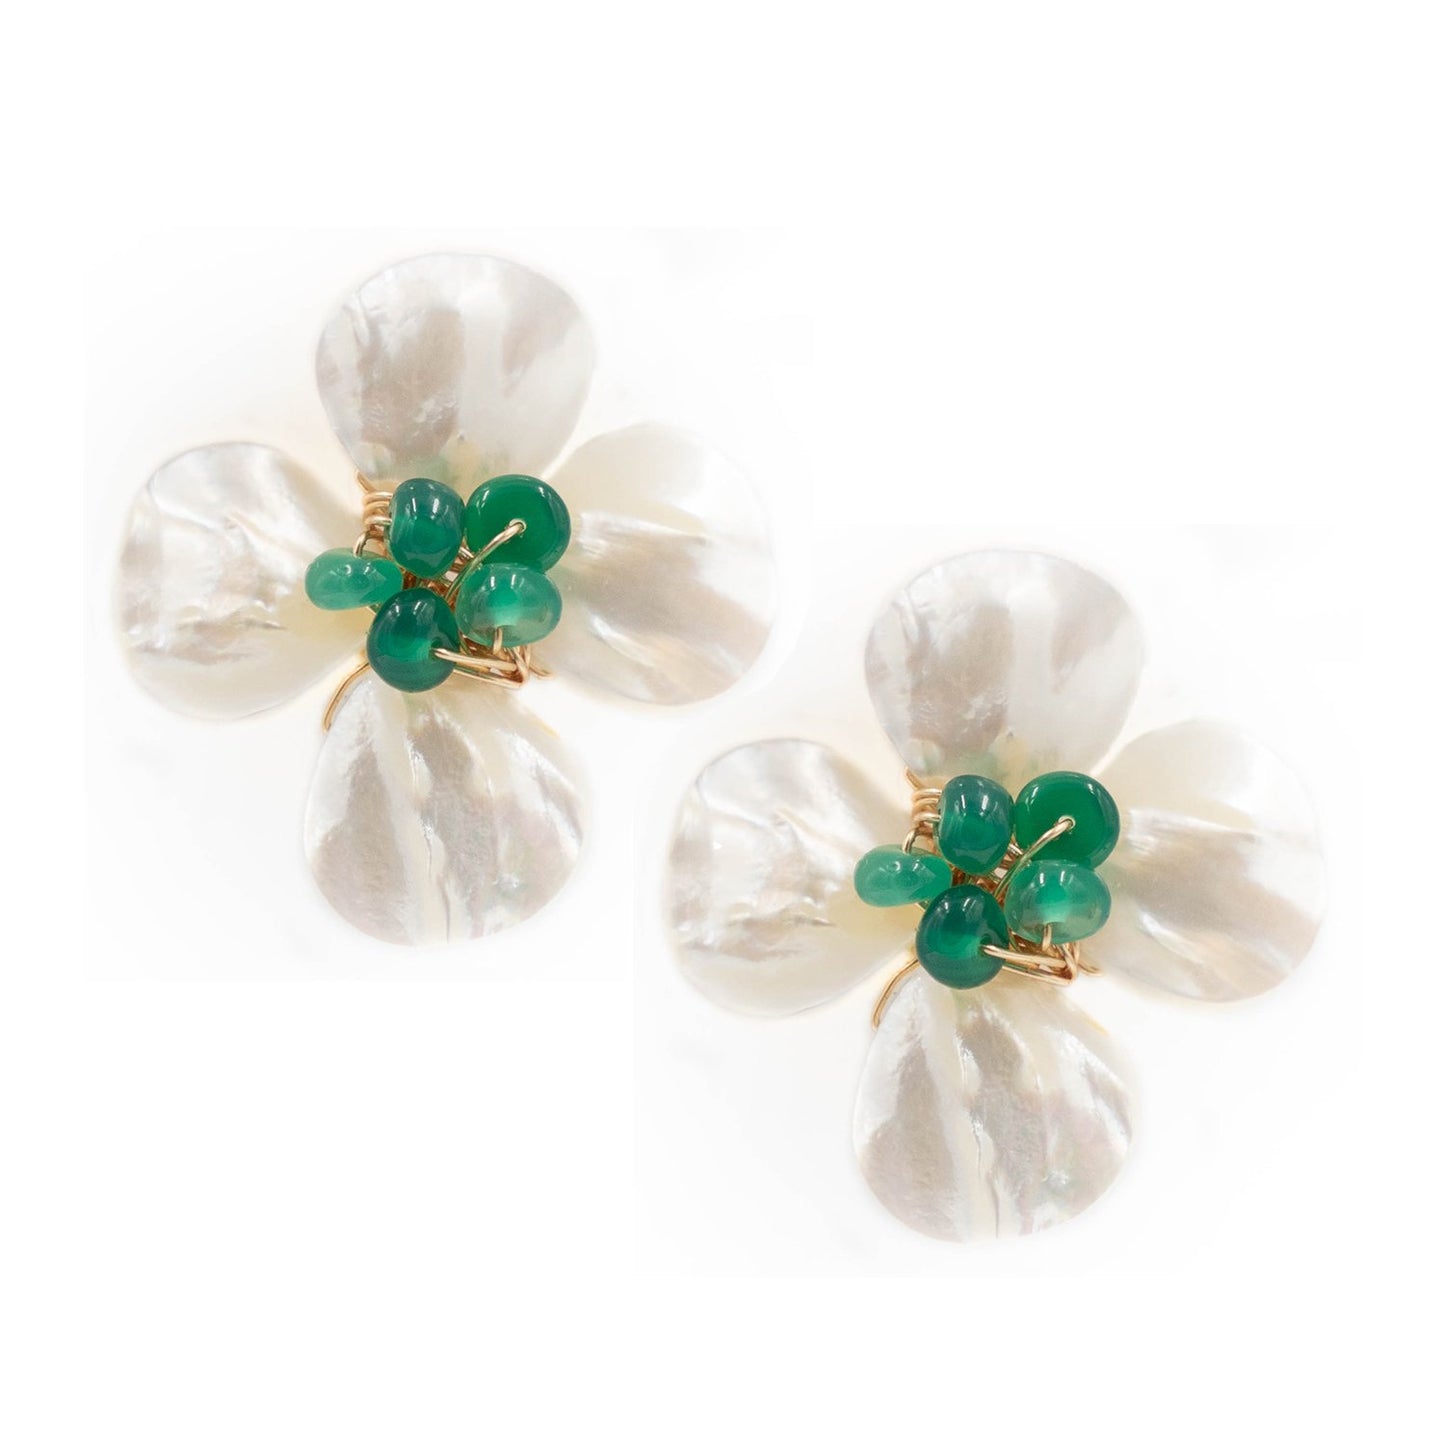 Hazen & Co. Poppy Earring, Emerald Green Onyx